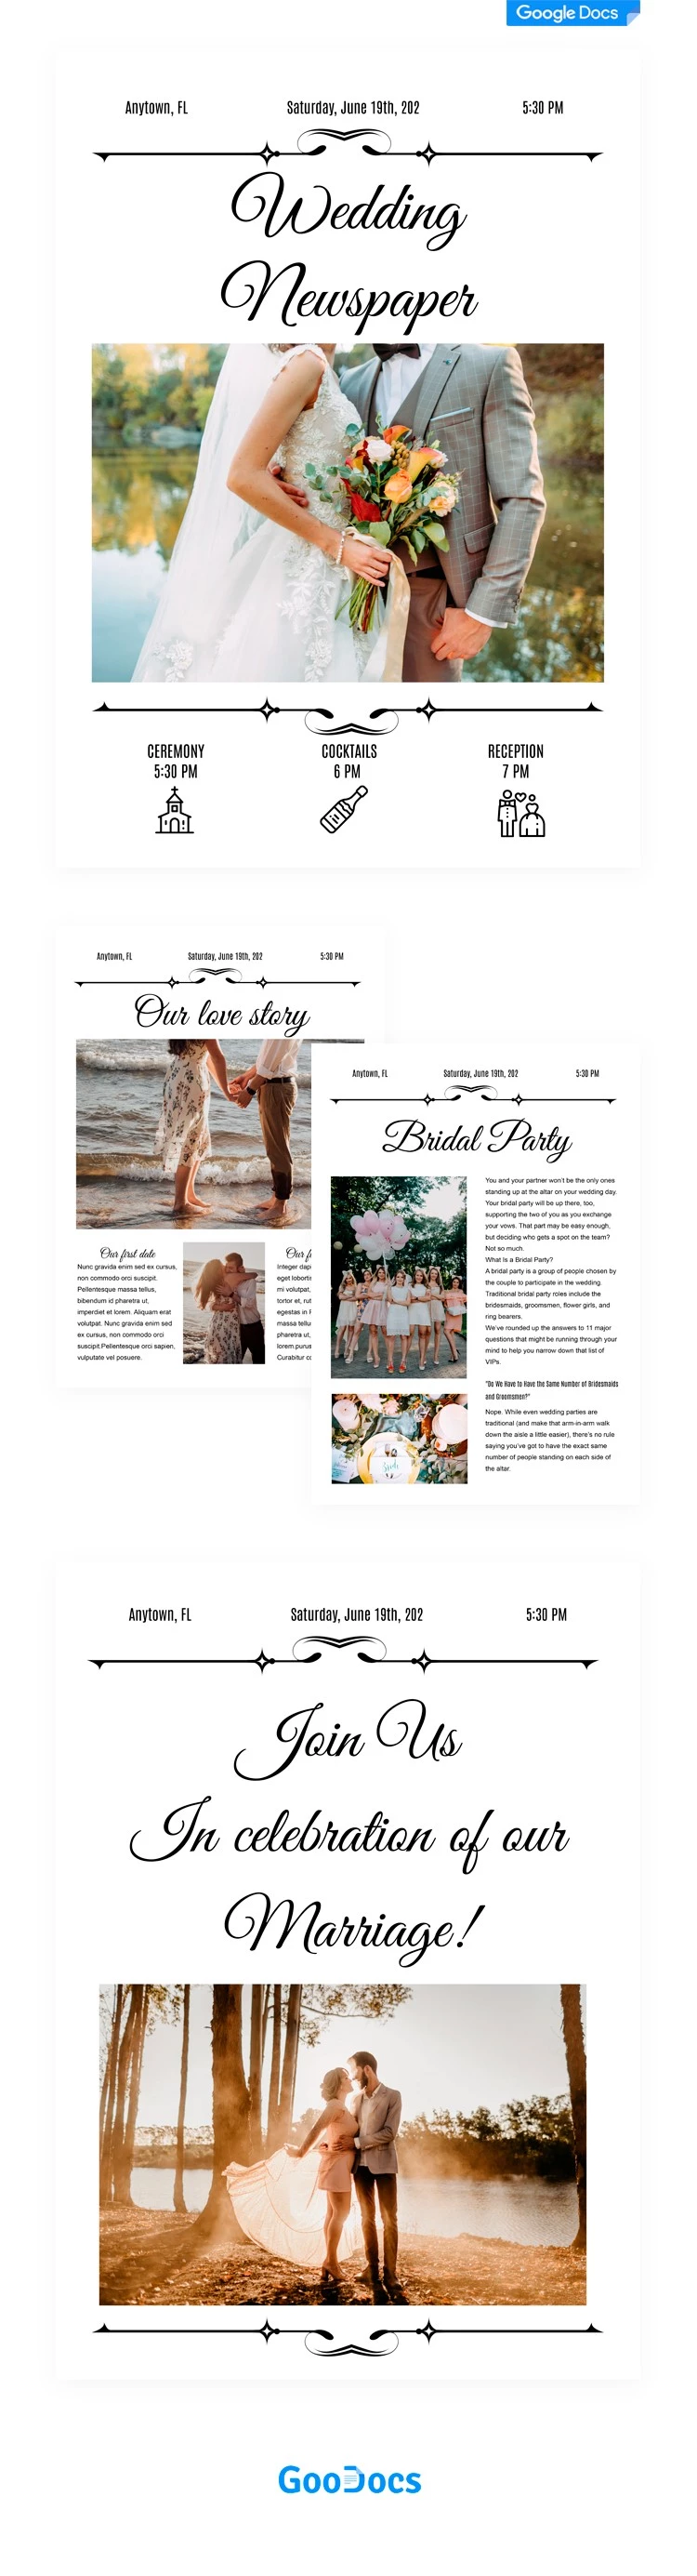 Periódico del día de la boda. - free Google Docs Template - 10062024